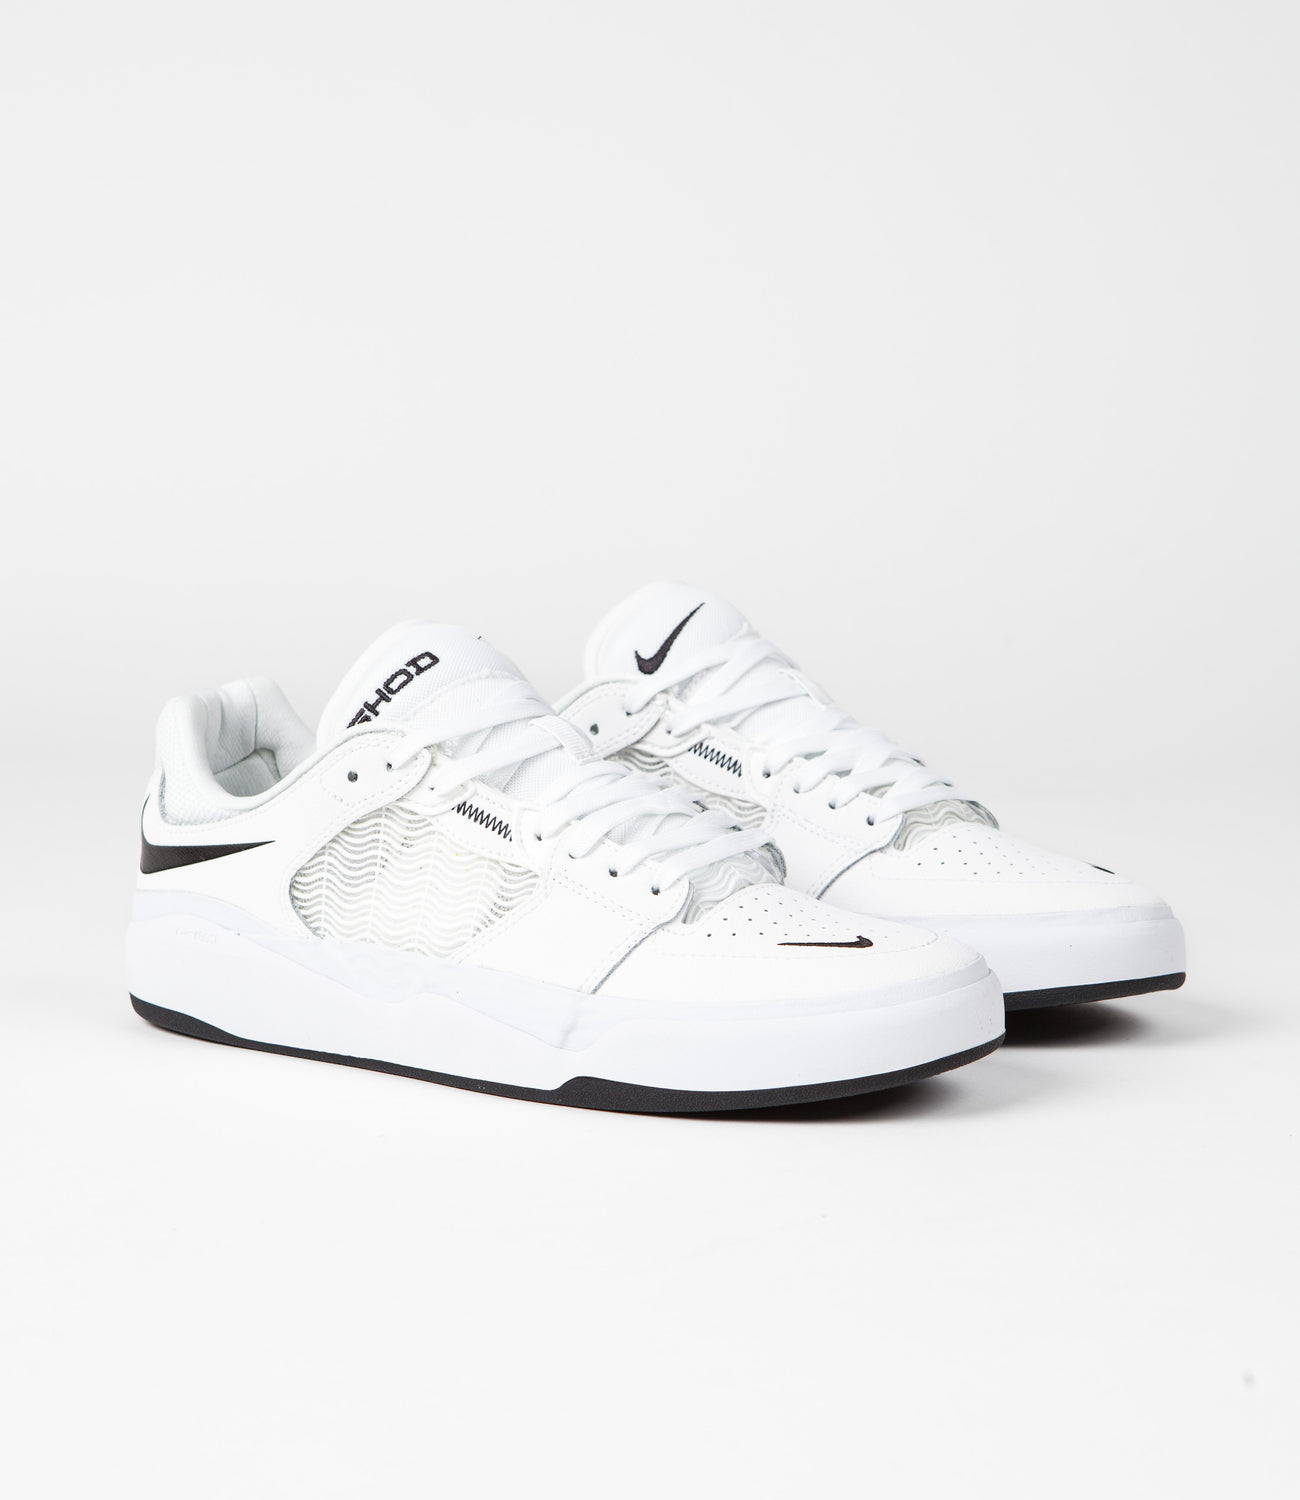 Nike SB Ishod Premium Shoes - White / Black - White - Black | Flatspot